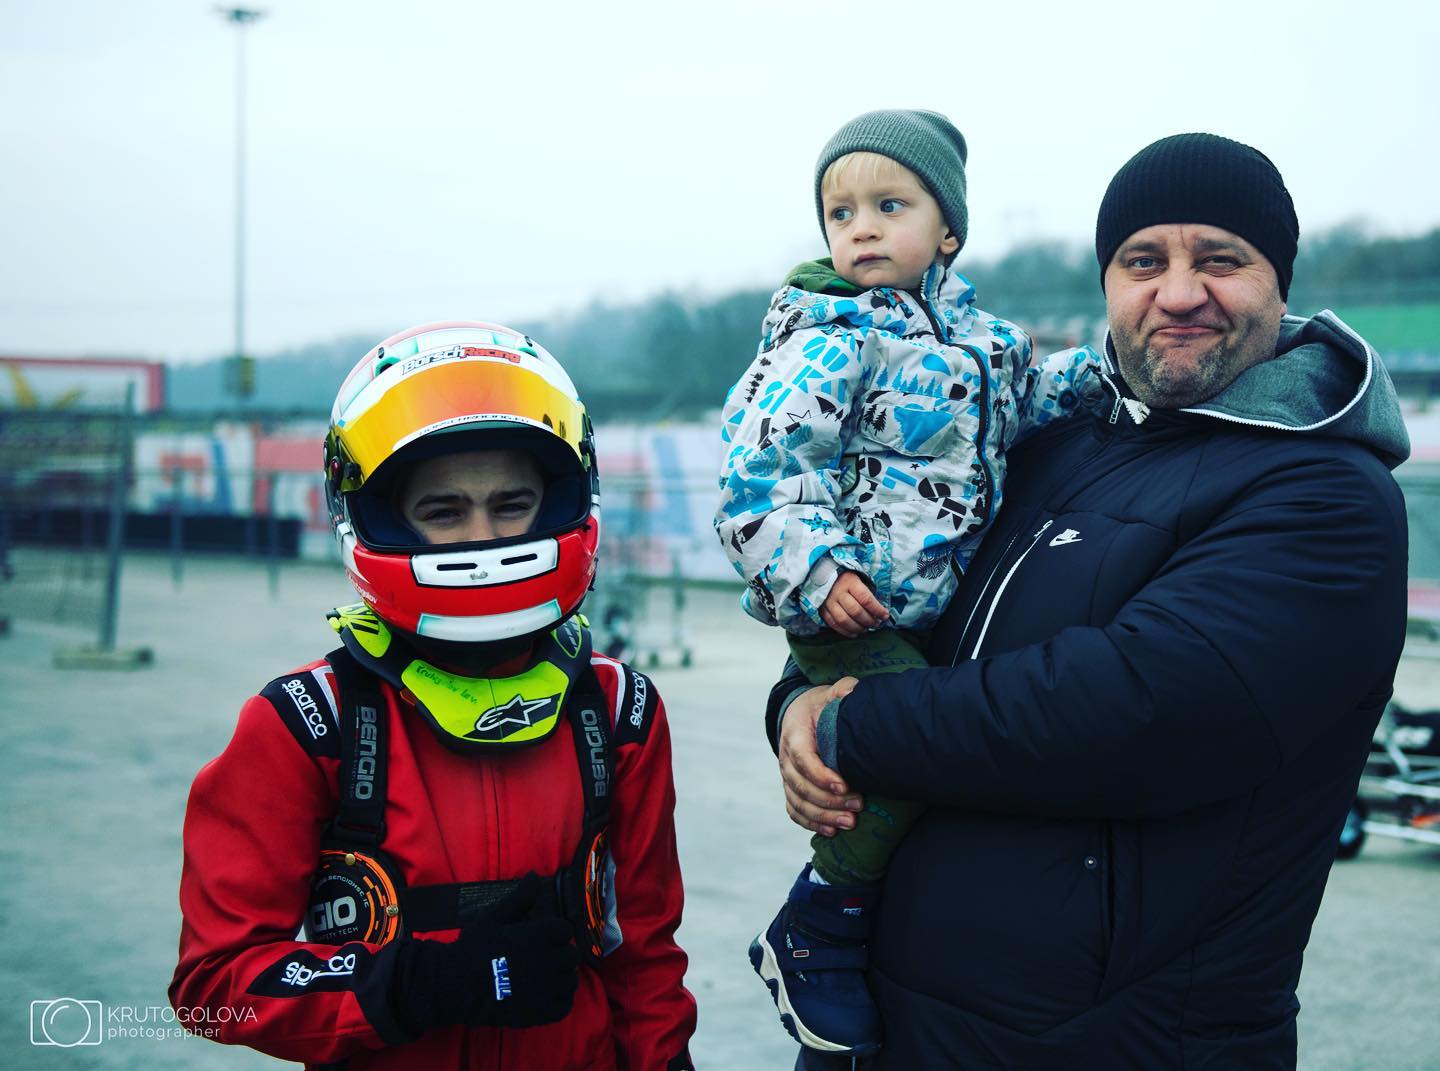 Єгор Крутоголов з синами – Левом та Максимом. Фото: Instagram.com/dizelmano/